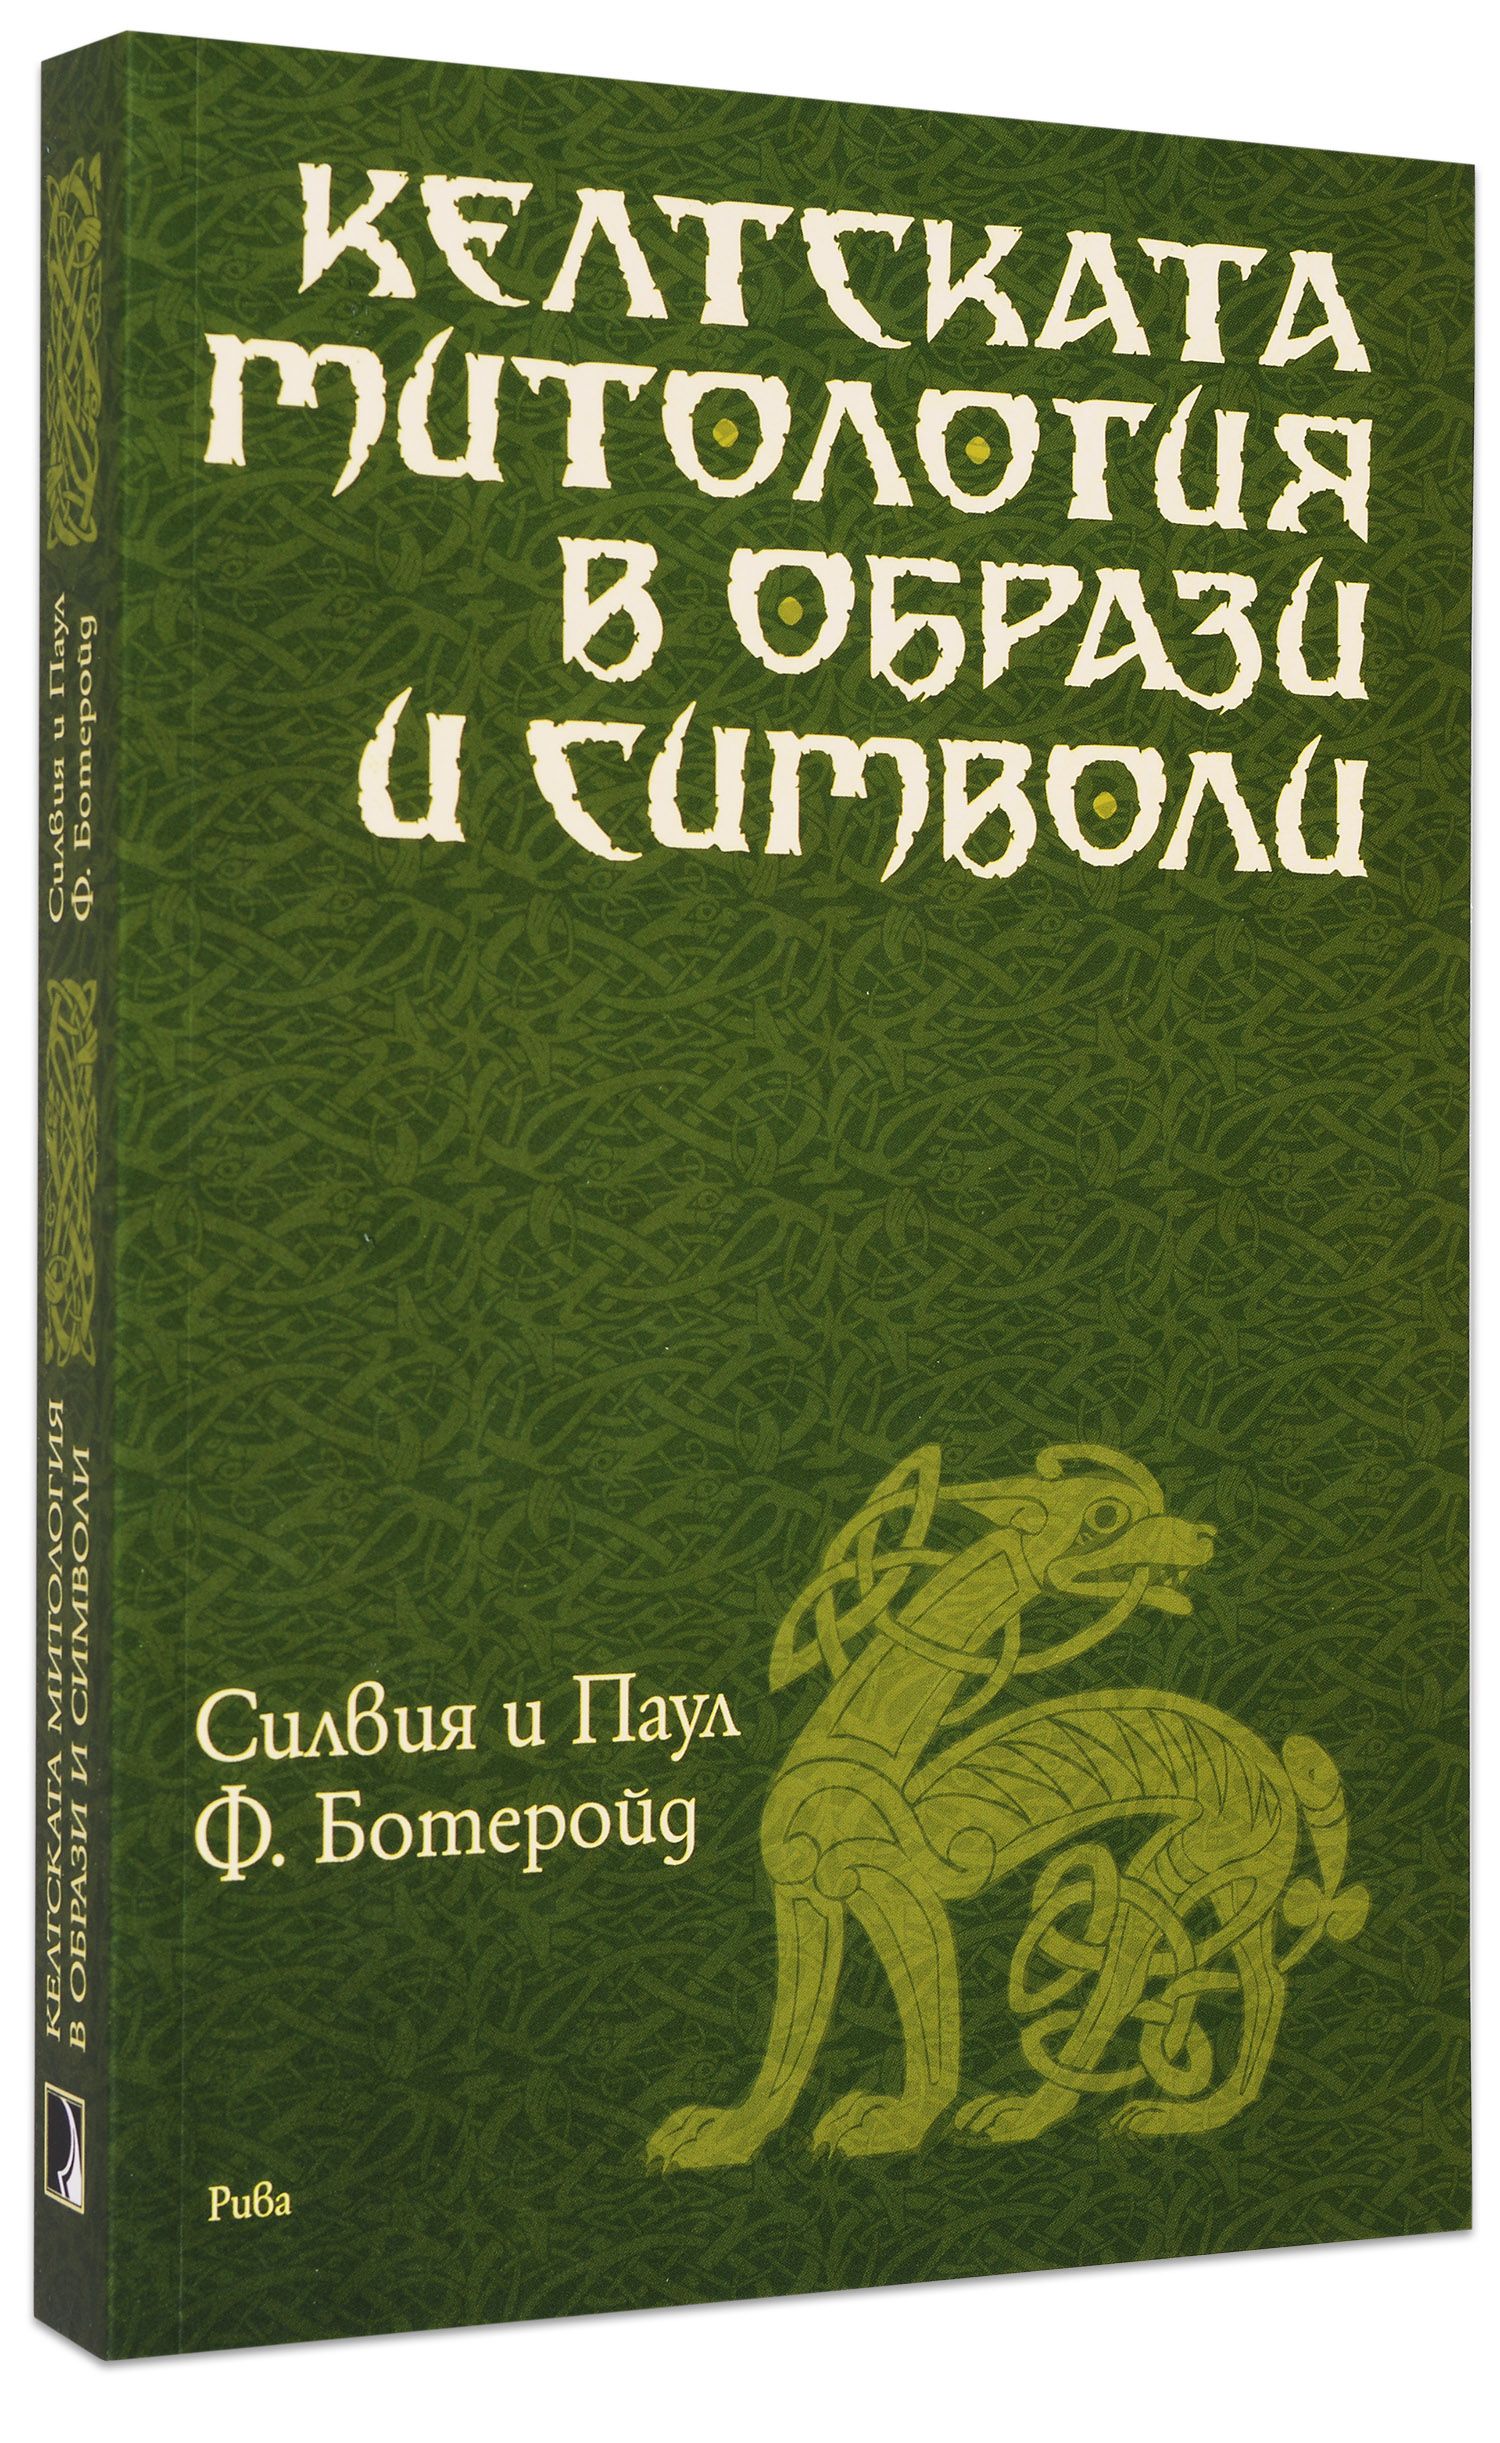 Келтската митология в образи и символи | Ozone.bg